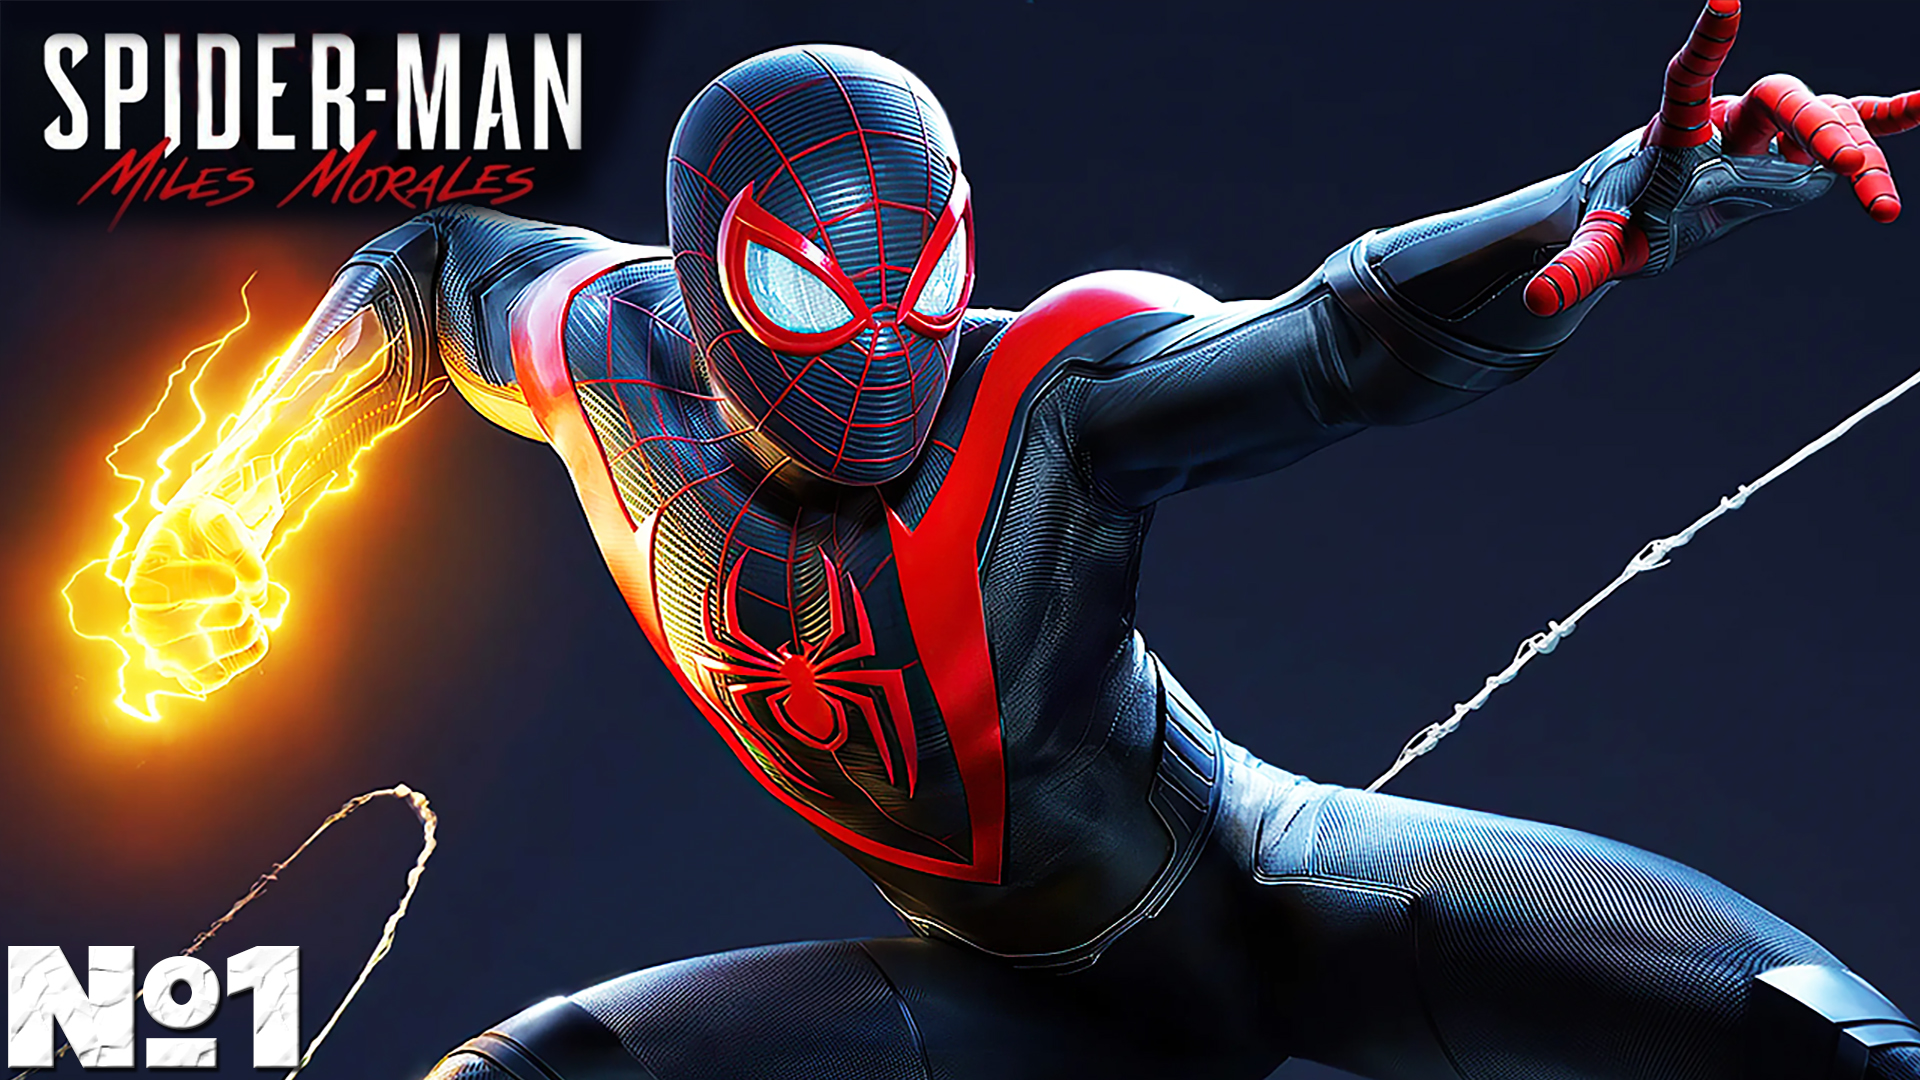 Spider-Man Miles Morales - Прохождение. Часть №1. #spiderman #milesmorales #ps5 #человекпаук